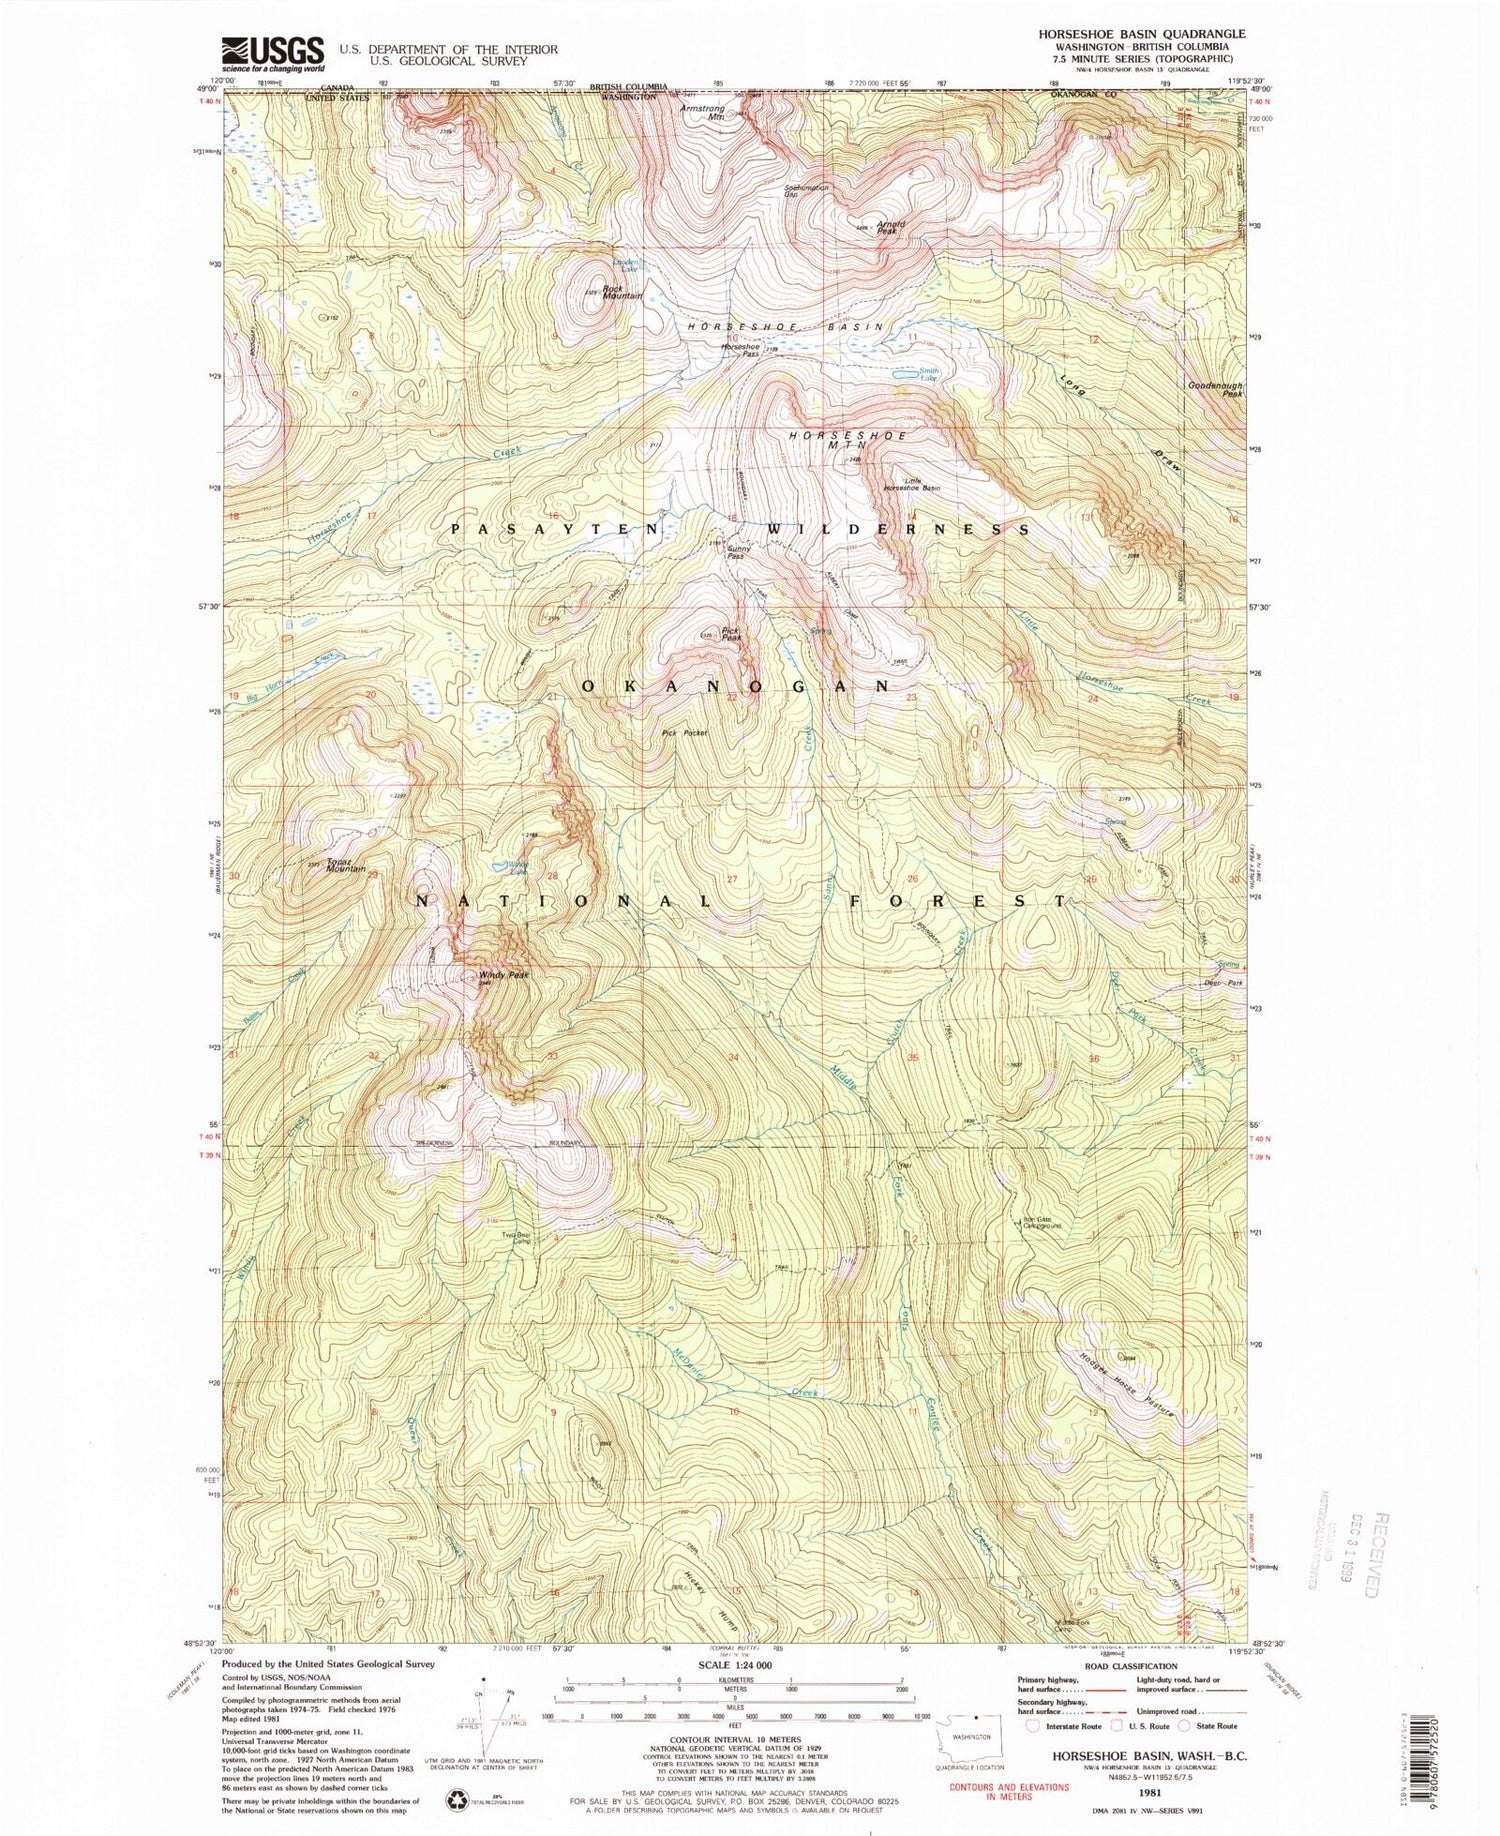 Classic USGS Horseshoe Basin Washington 7.5'x7.5' Topo Map Image